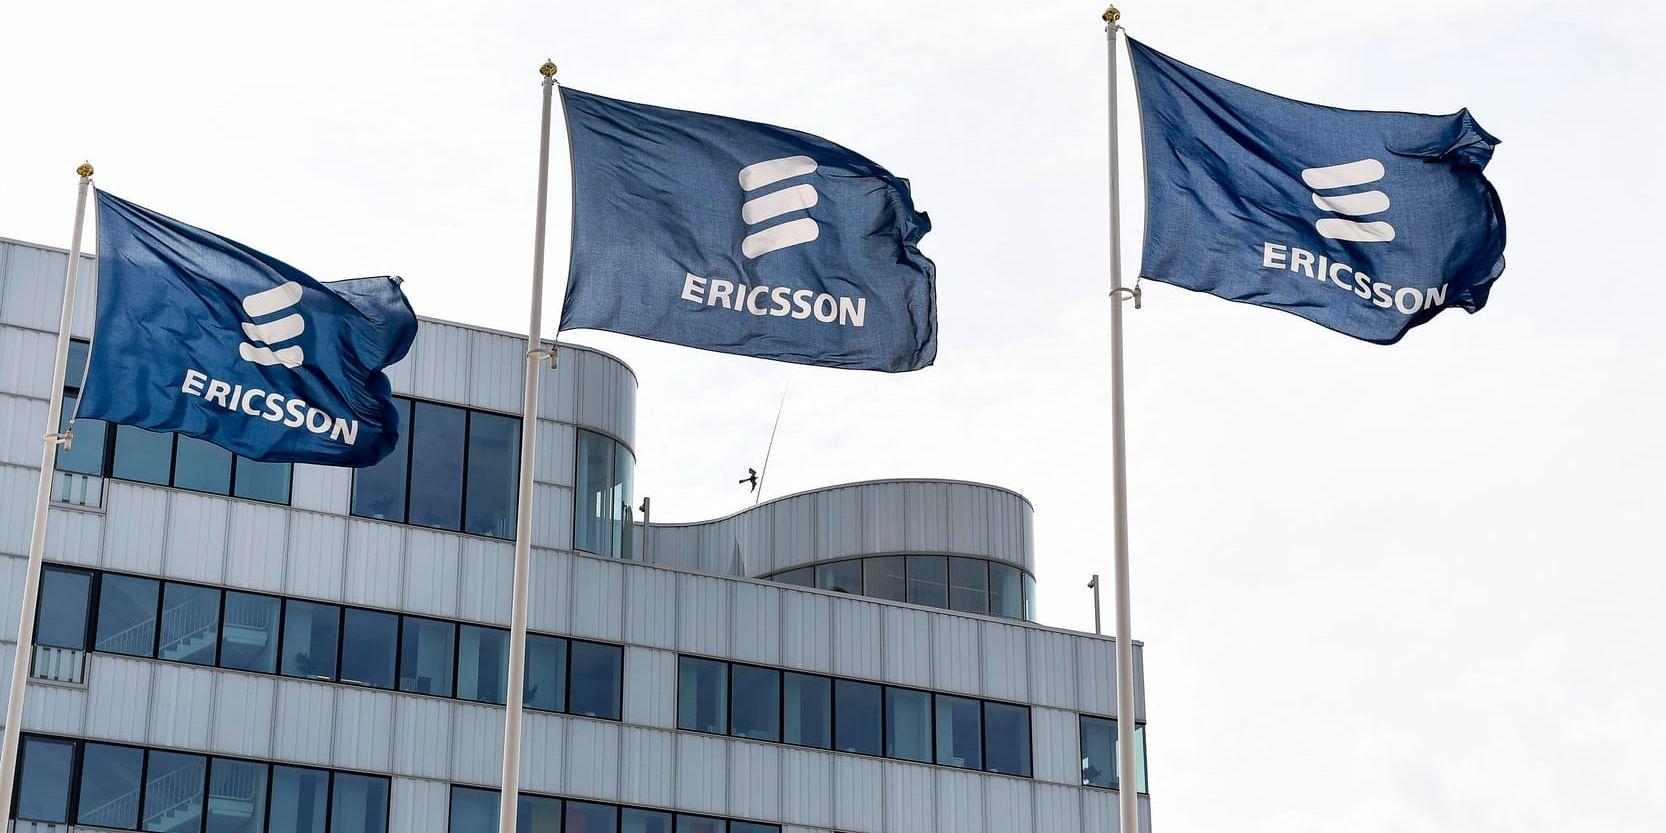 Tidigare Ericssonanställda får dela på drygt 2 miljoner euro efter stödpaket gått igenom EU-parlamentet. Arkivbild.